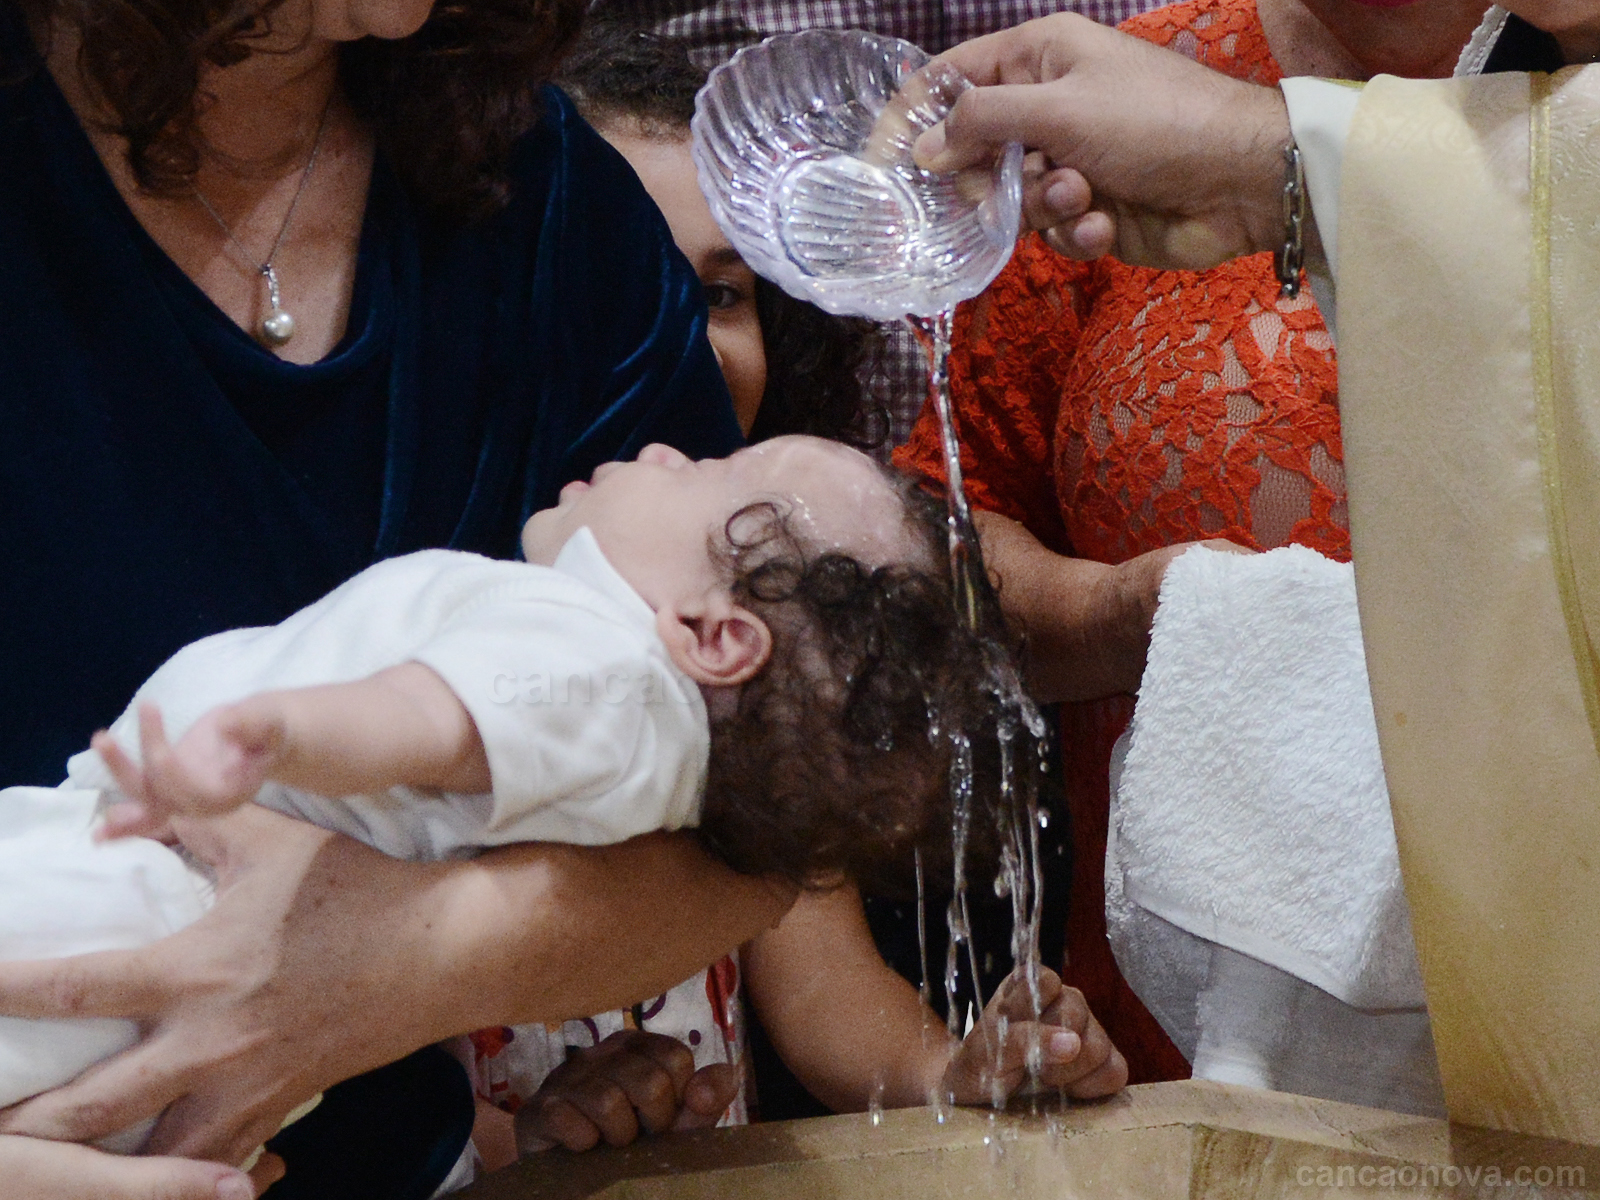  BATISMOS: Batismo com água, com o Espírito Santo e com